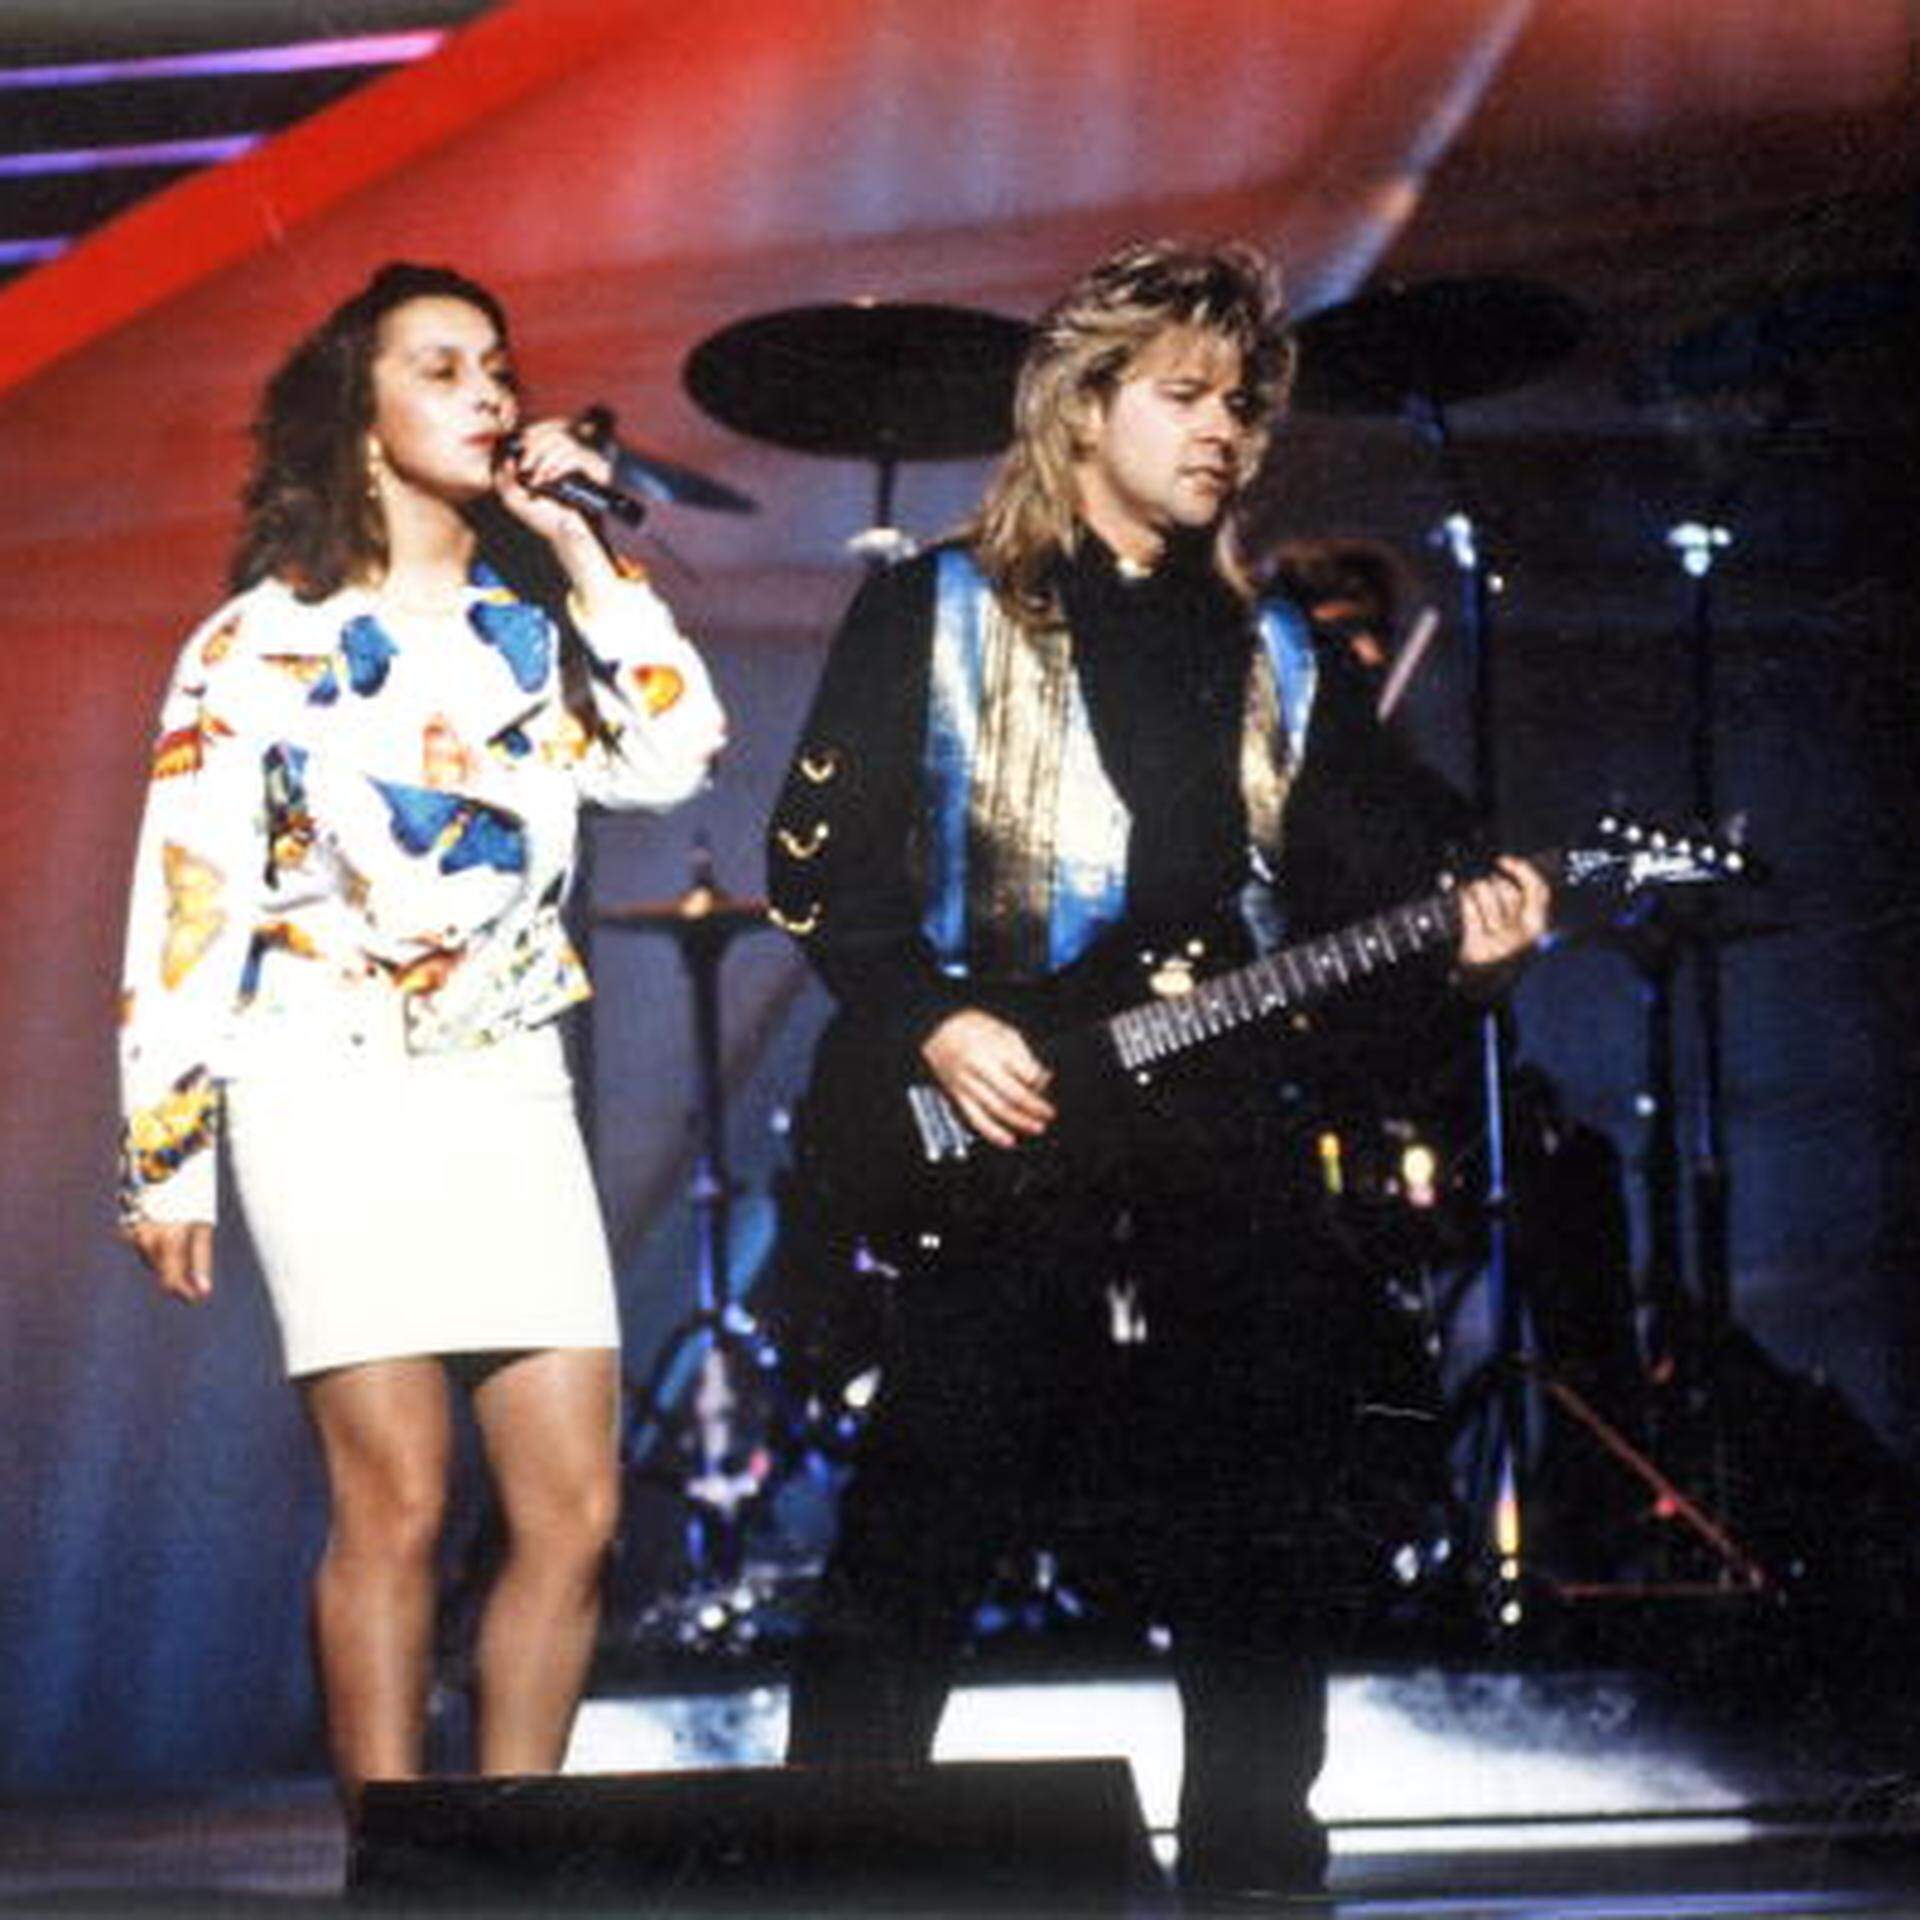 Das Duo Modern Times, bestehend aus Simone Weis und Jimmy Martin, belegte beim ESC 1993 im irischen Millstreet mit dem Lied „Donne-moi une chance“ Platz 20 unter 25 Teilnehmern.